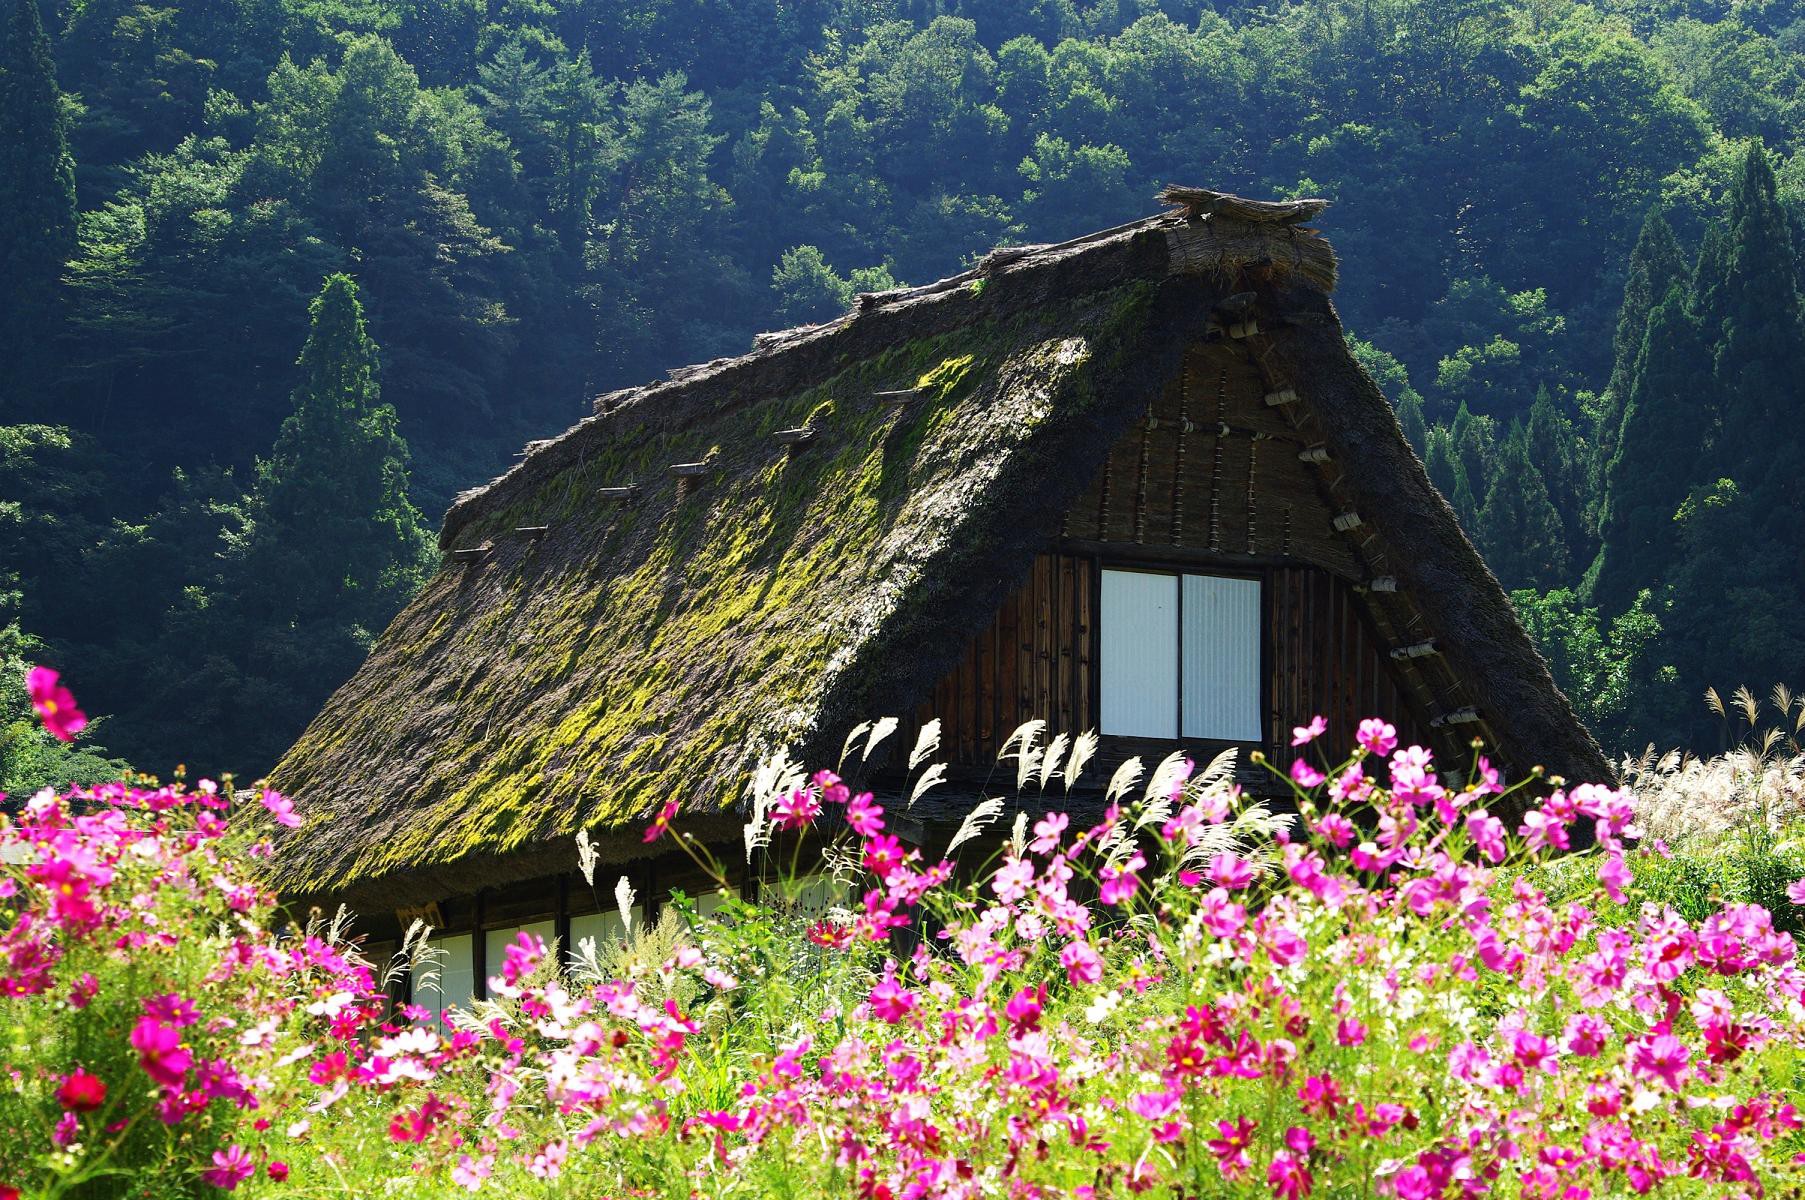 Cảm giác an yên và bình yên tuyệt vời là điều mà bạn có thể tìm thấy ở Nhật Bản. Ở đó, các ngôi nhà sàn xinh đẹp của làng quê thực sự rất đặc biệt. Từ ngoại hình đến cách sống, tất cả đều đươc giữ truyền thống và đẹp đến xao xuyến. Hãy cùng xem hình ảnh để trải nghiệm nét đẹp và sức hút của làng quê Nhật Bản.